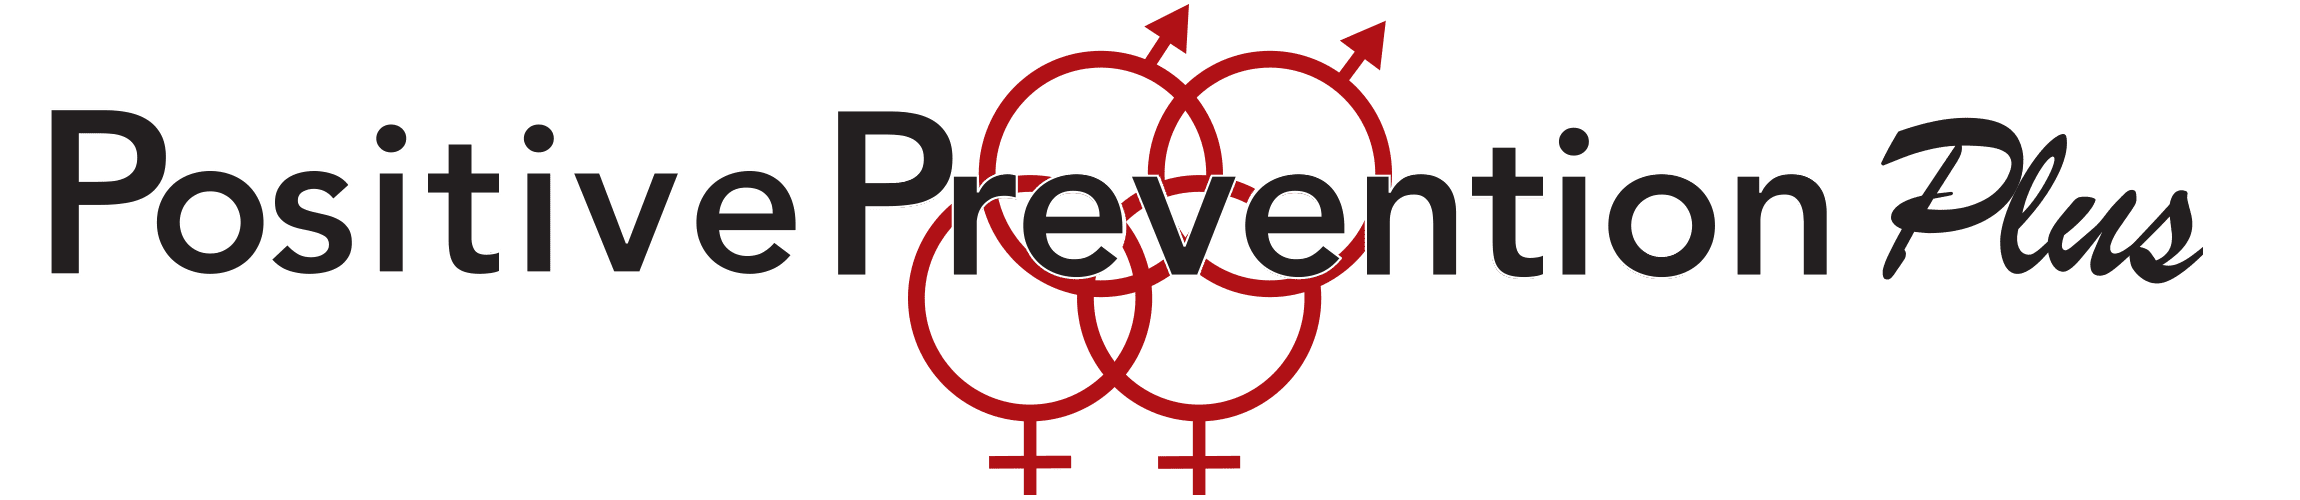 Positive Prevention PLUS logo